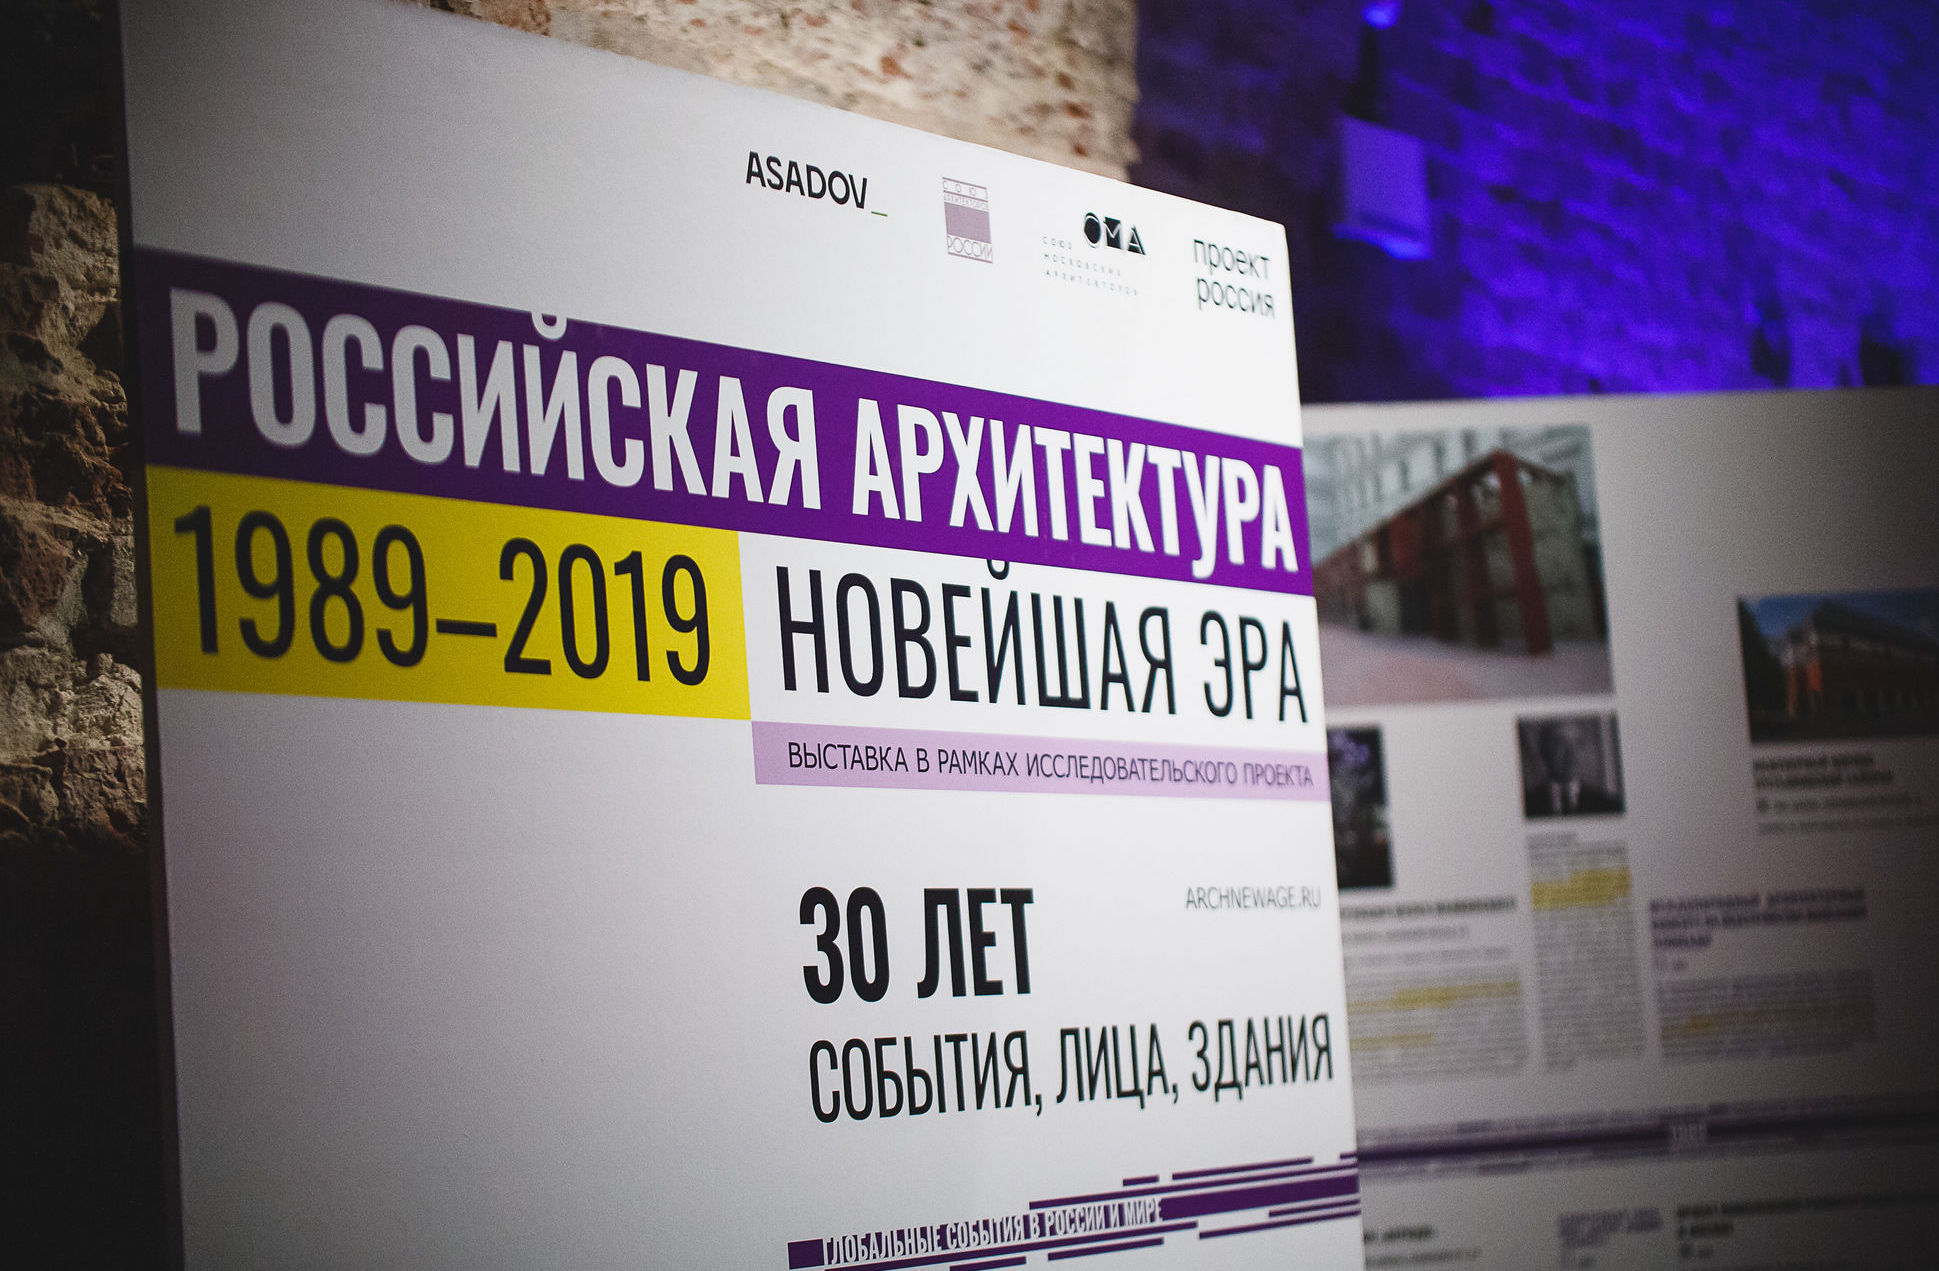 14 мая 2019 года в Государственном музее архитектуры им. А. В. Щусева состоялось открытие уникальной выставки «Российская архитектура. Новейшая эра»